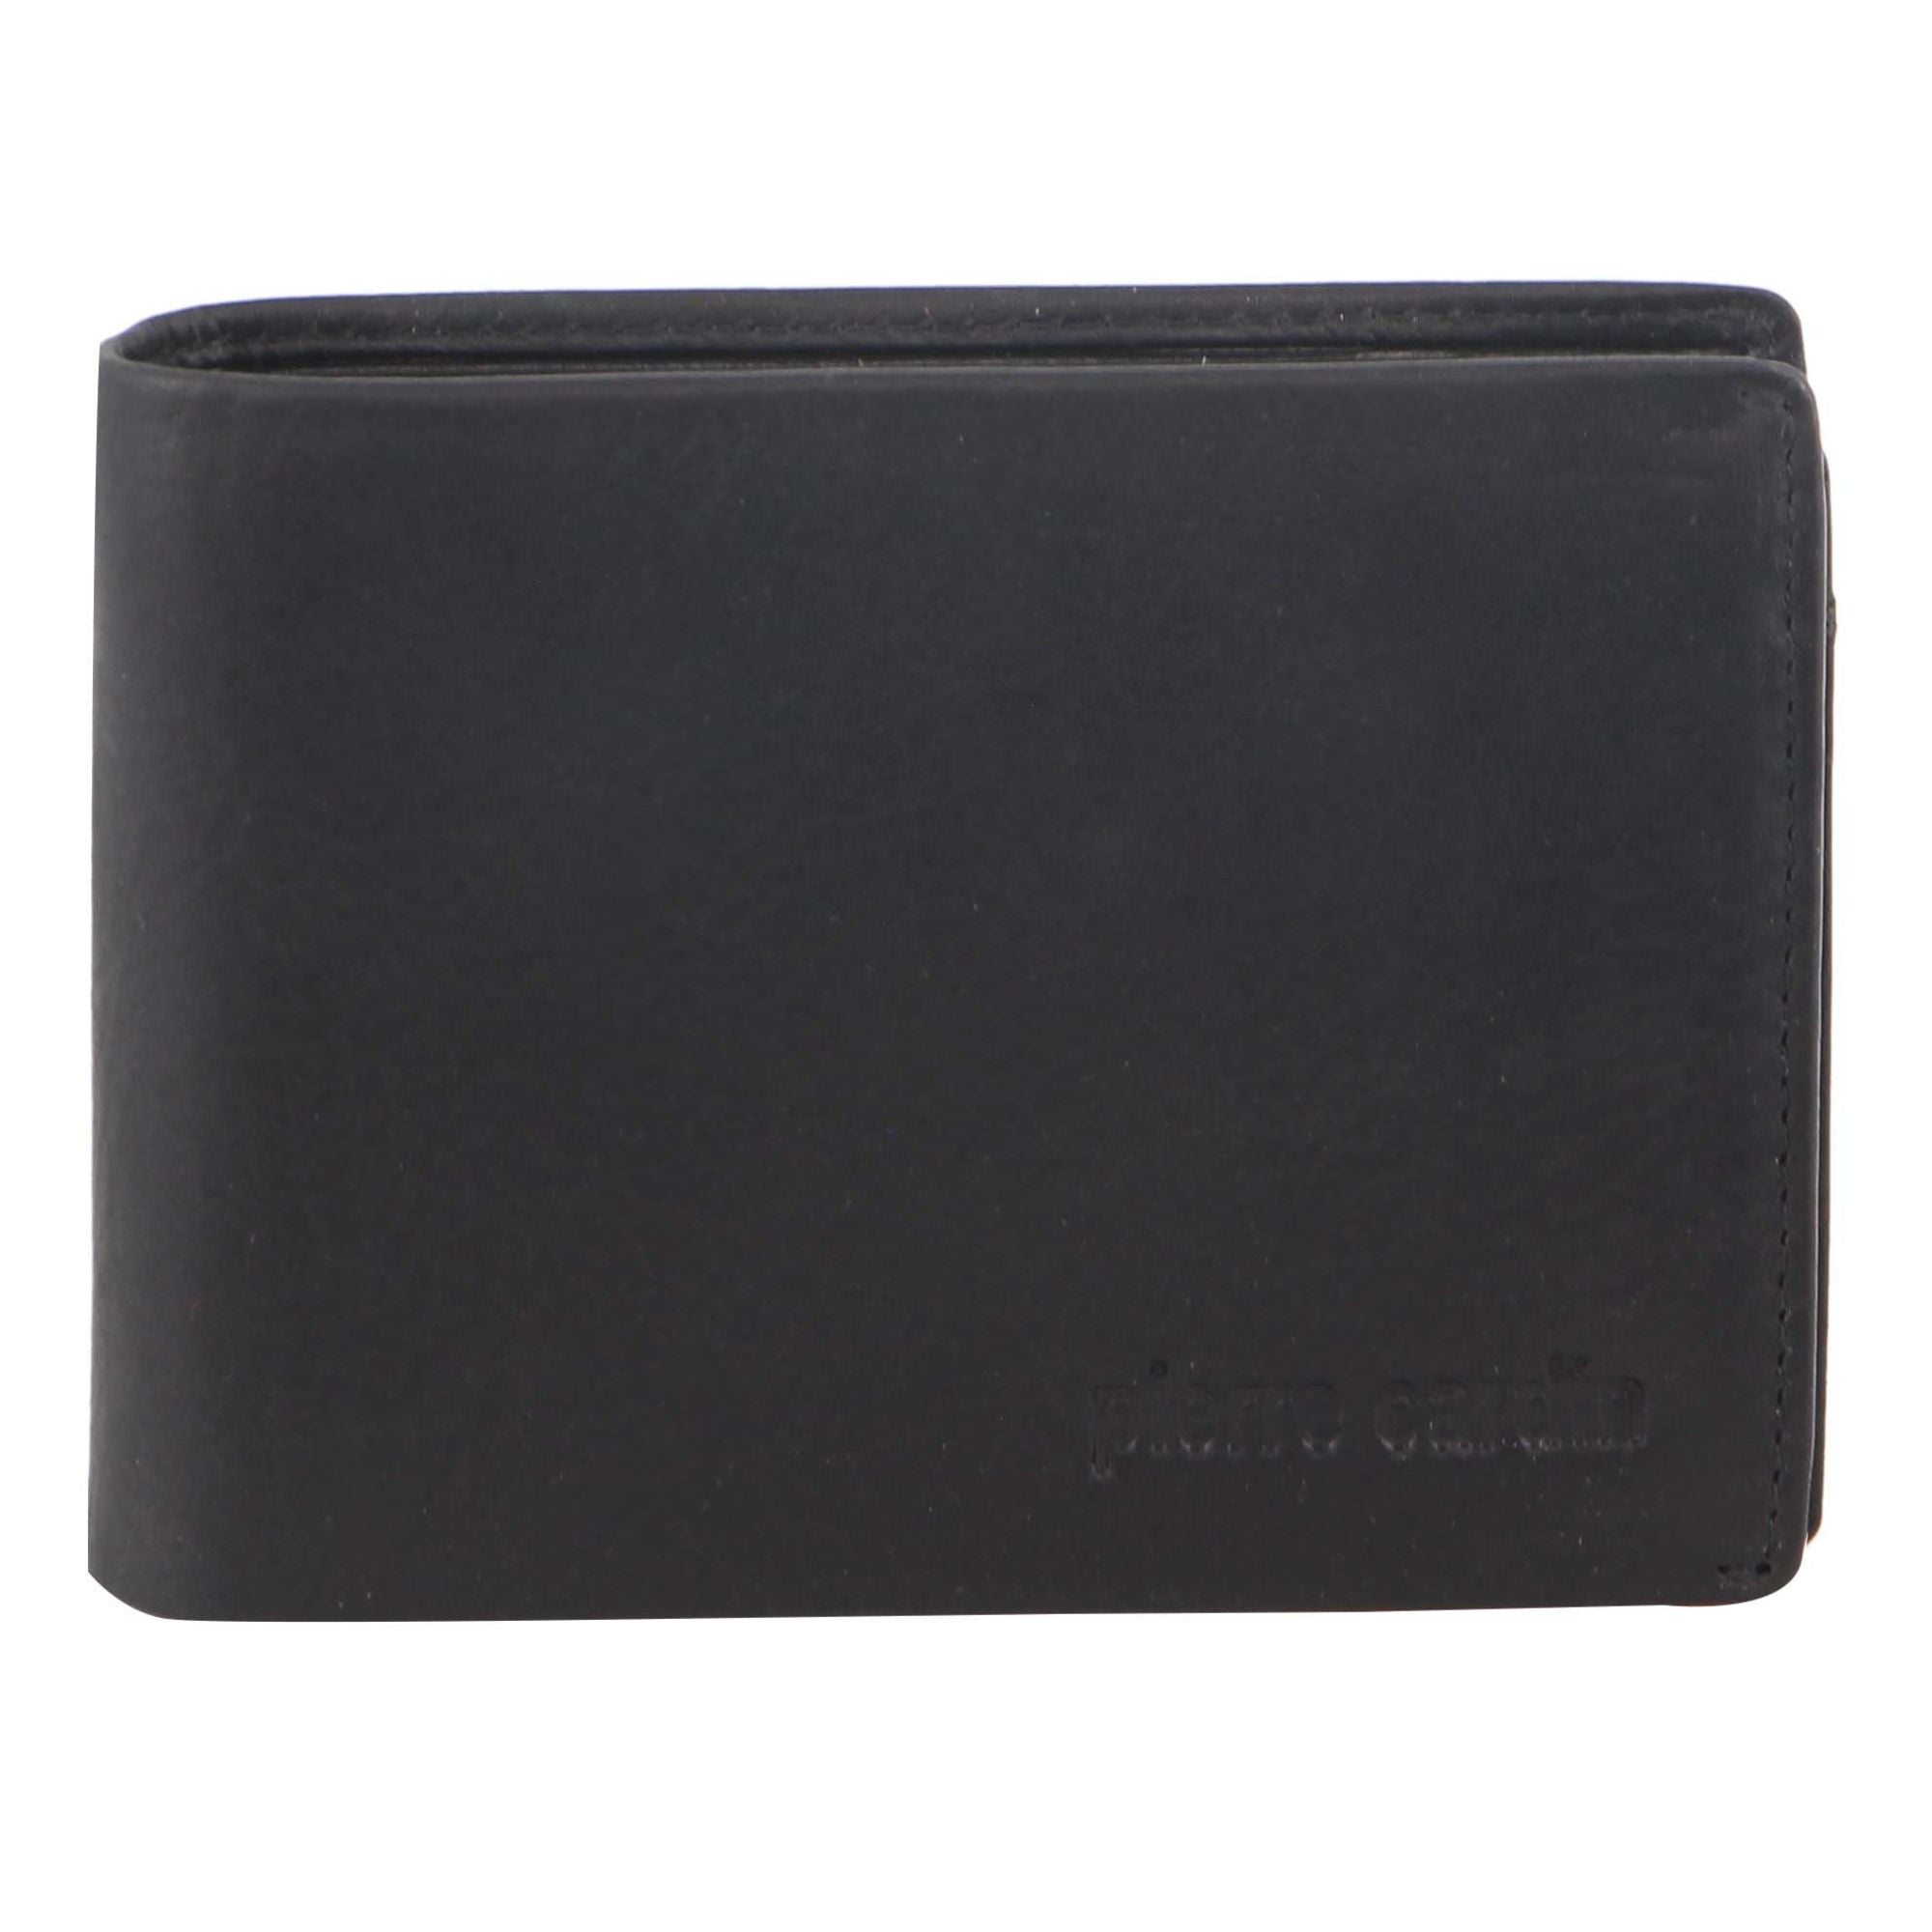 Pierre Cardin Rustic Leather Men's Bi-Fold Wallet in Black